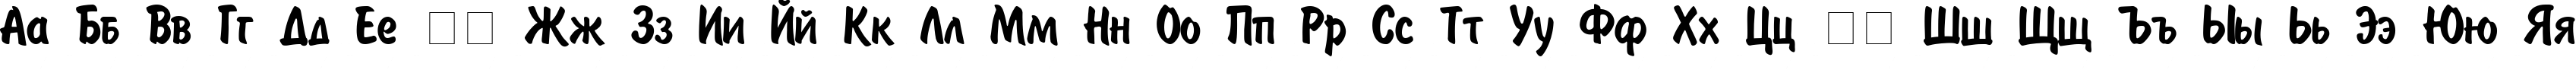 Пример написания русского алфавита шрифтом Painter